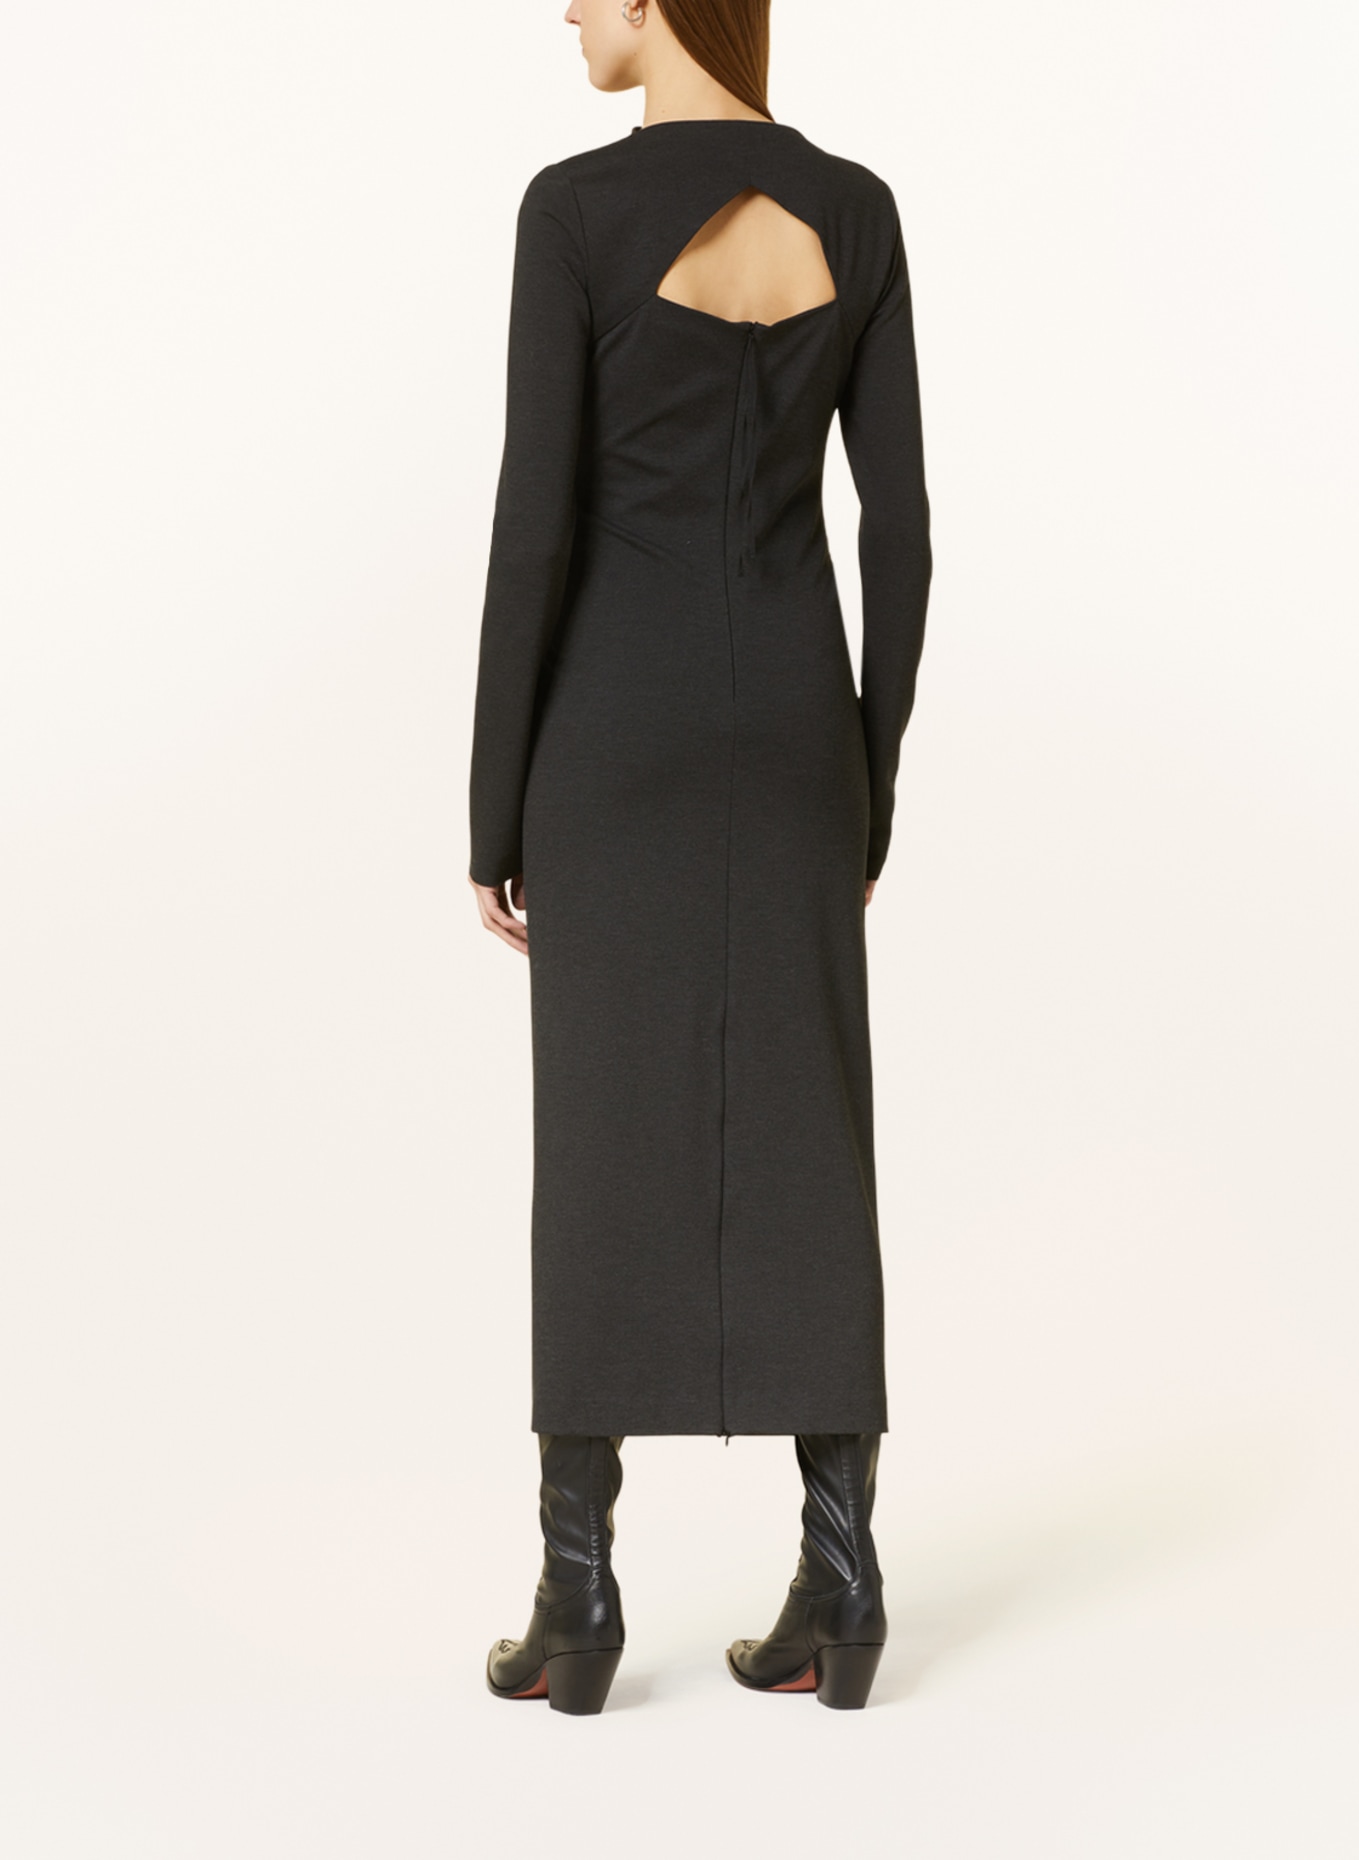 DOROTHEE SCHUMACHER Jersey dress, Color: DARK GRAY (Image 3)